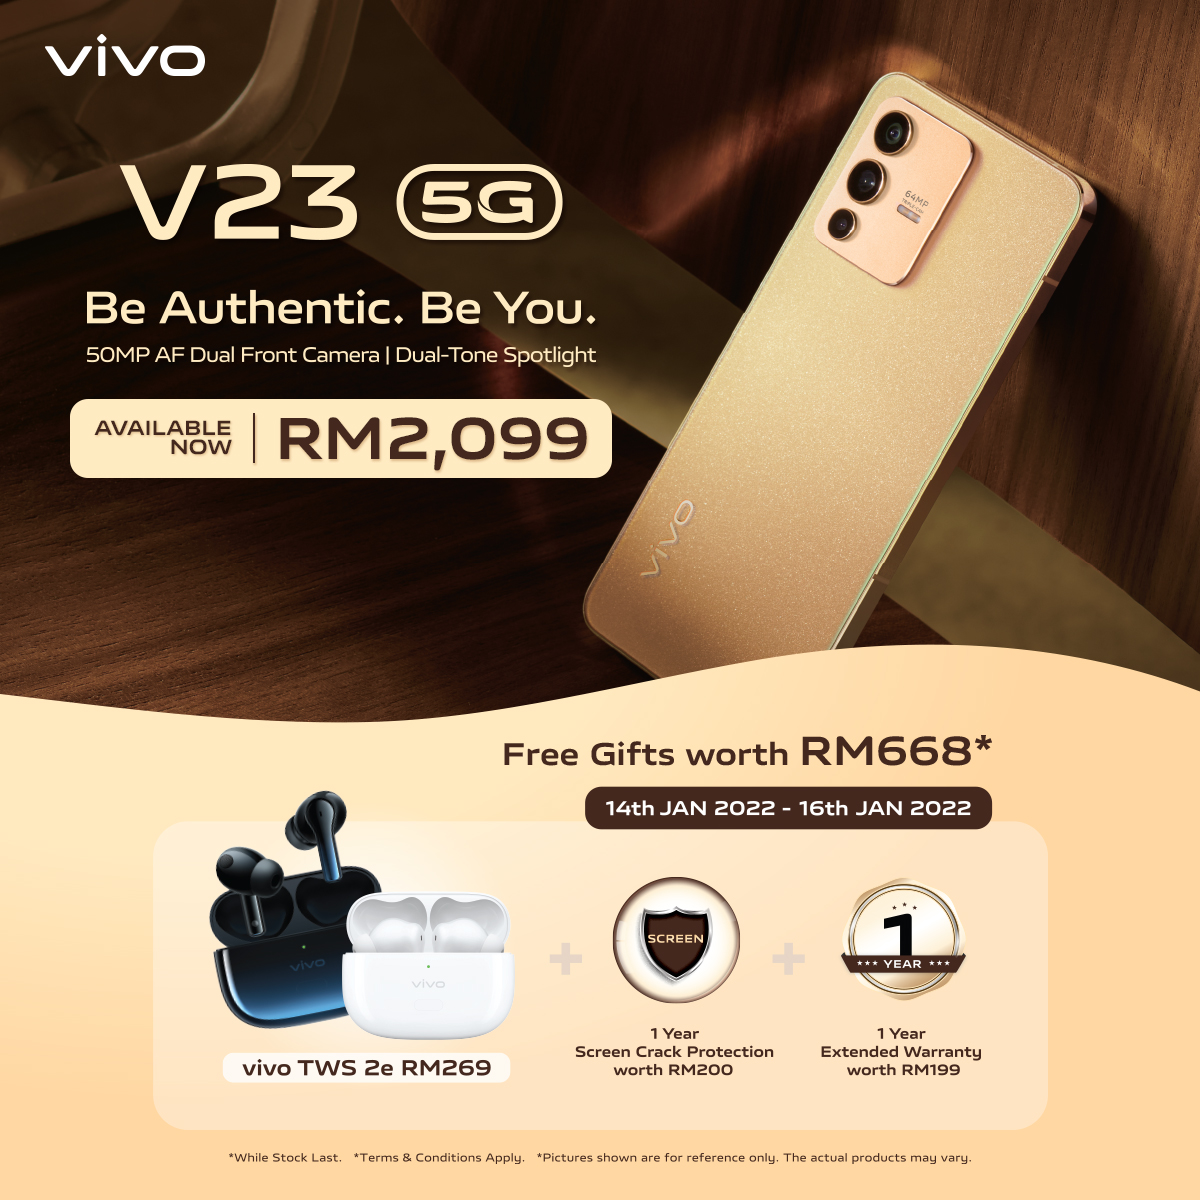 vivo V23 5G kini rasmi di Malaysia pada harga RM 2,099 - panel belakang boleh bertukar warna 18